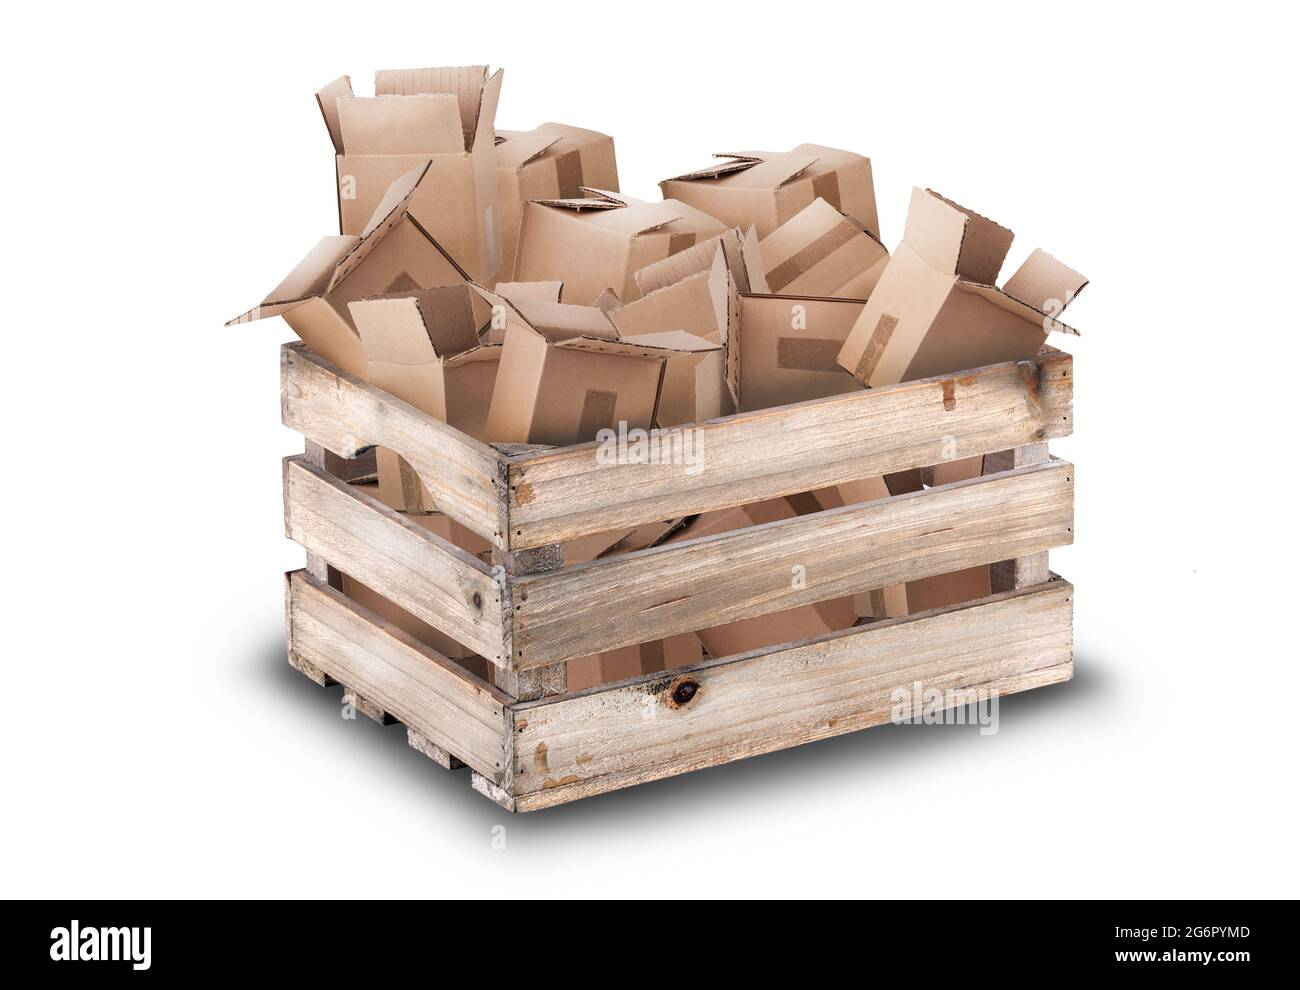 Une caisse en bois pleine de cartons d'emballage. Concept de recyclage et d'emballage isolé sur fond blanc Banque D'Images